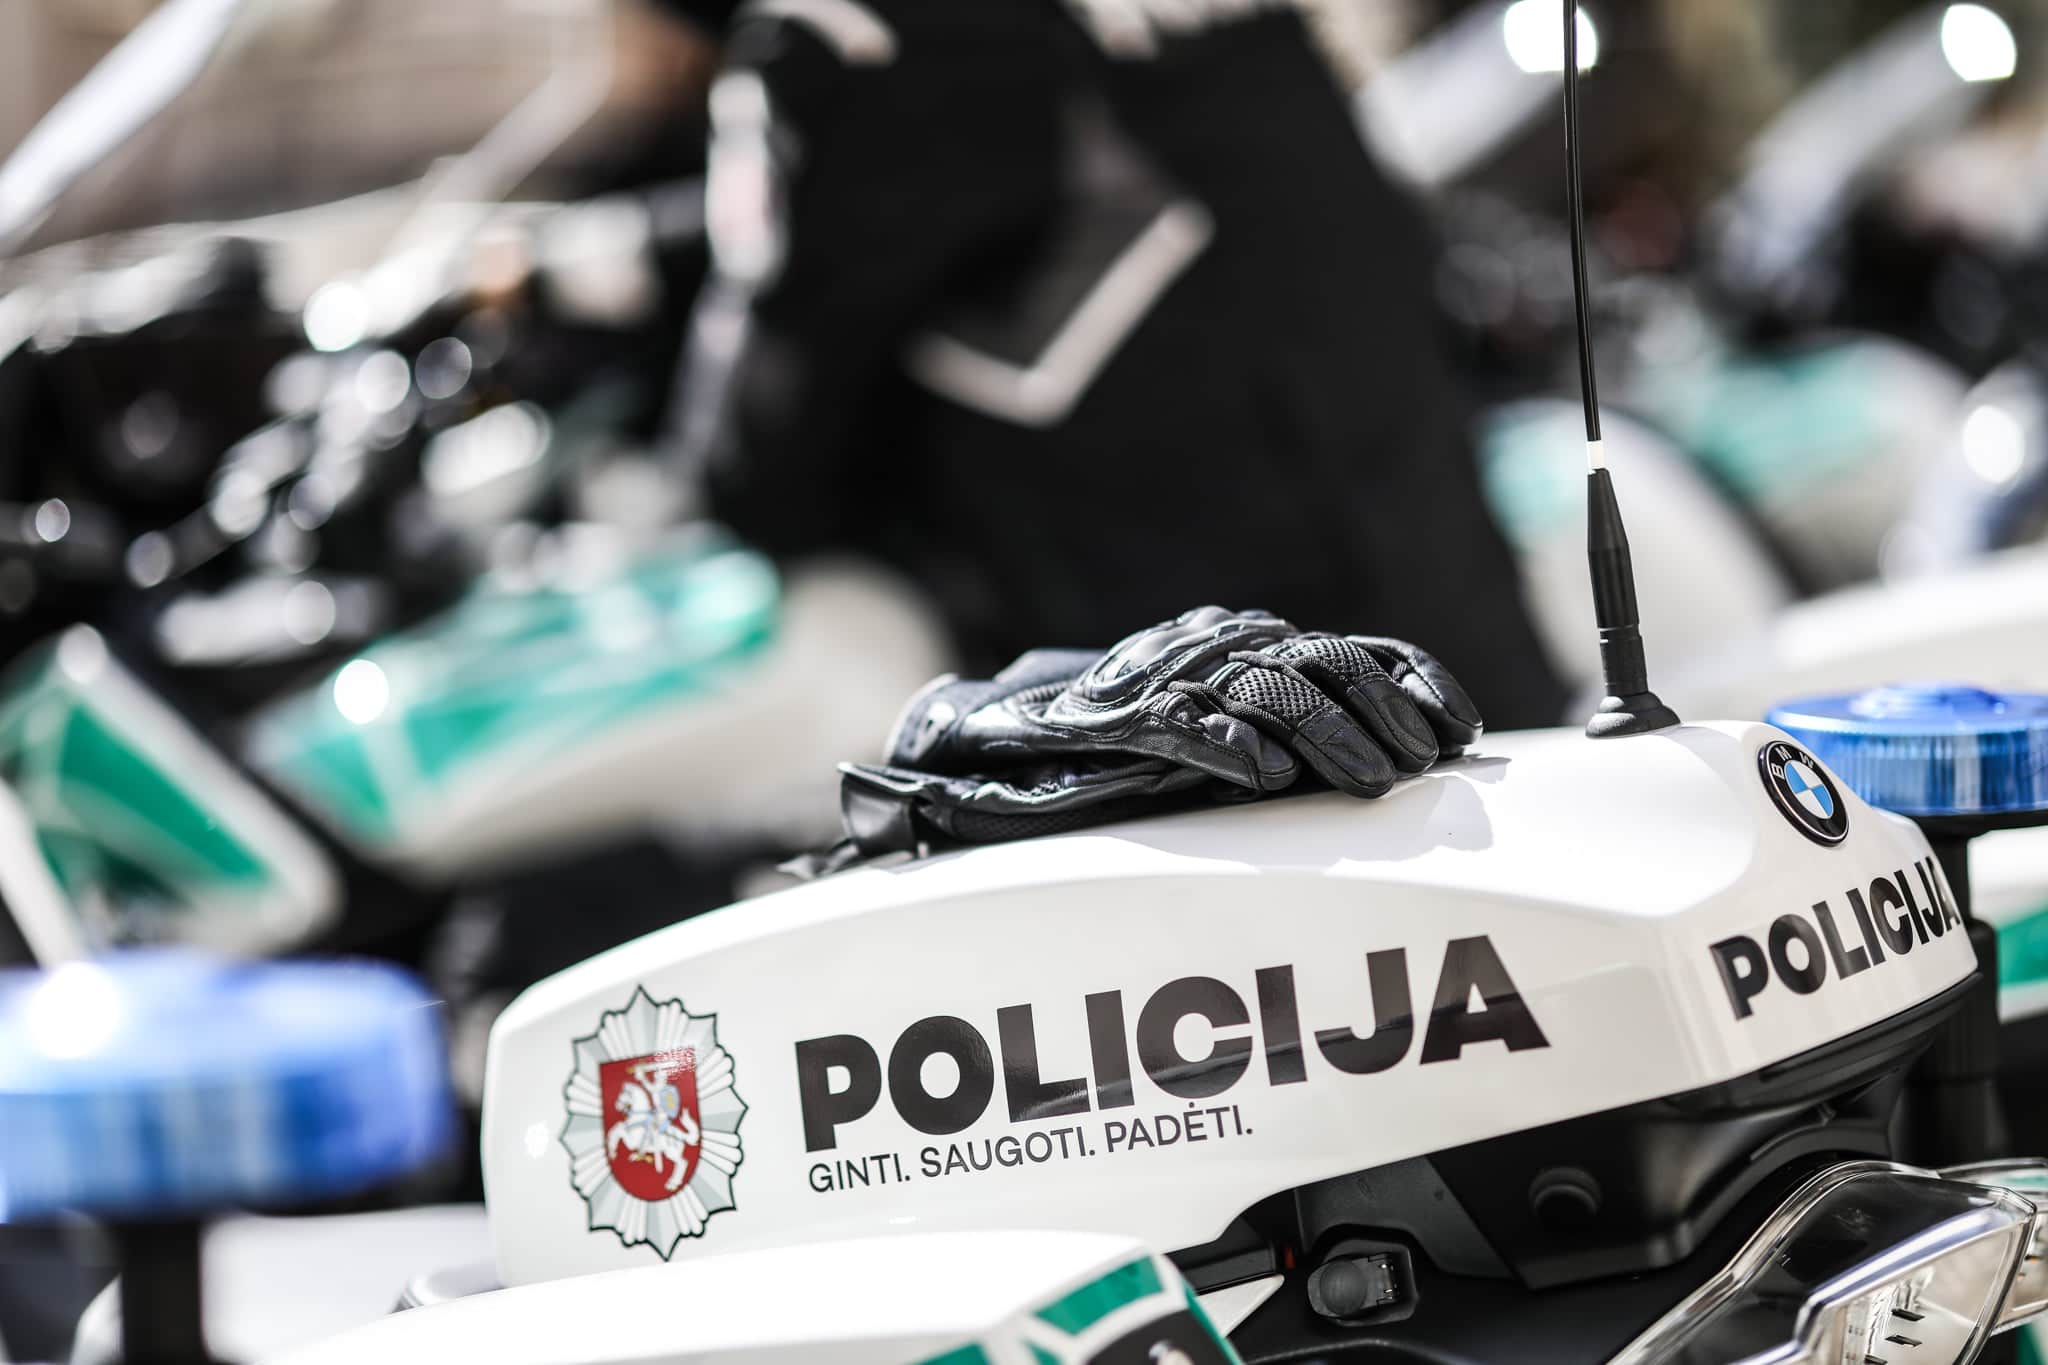 Policijos pareigunams perduota 11 nauju motociklu patruliavimui keliuose 19